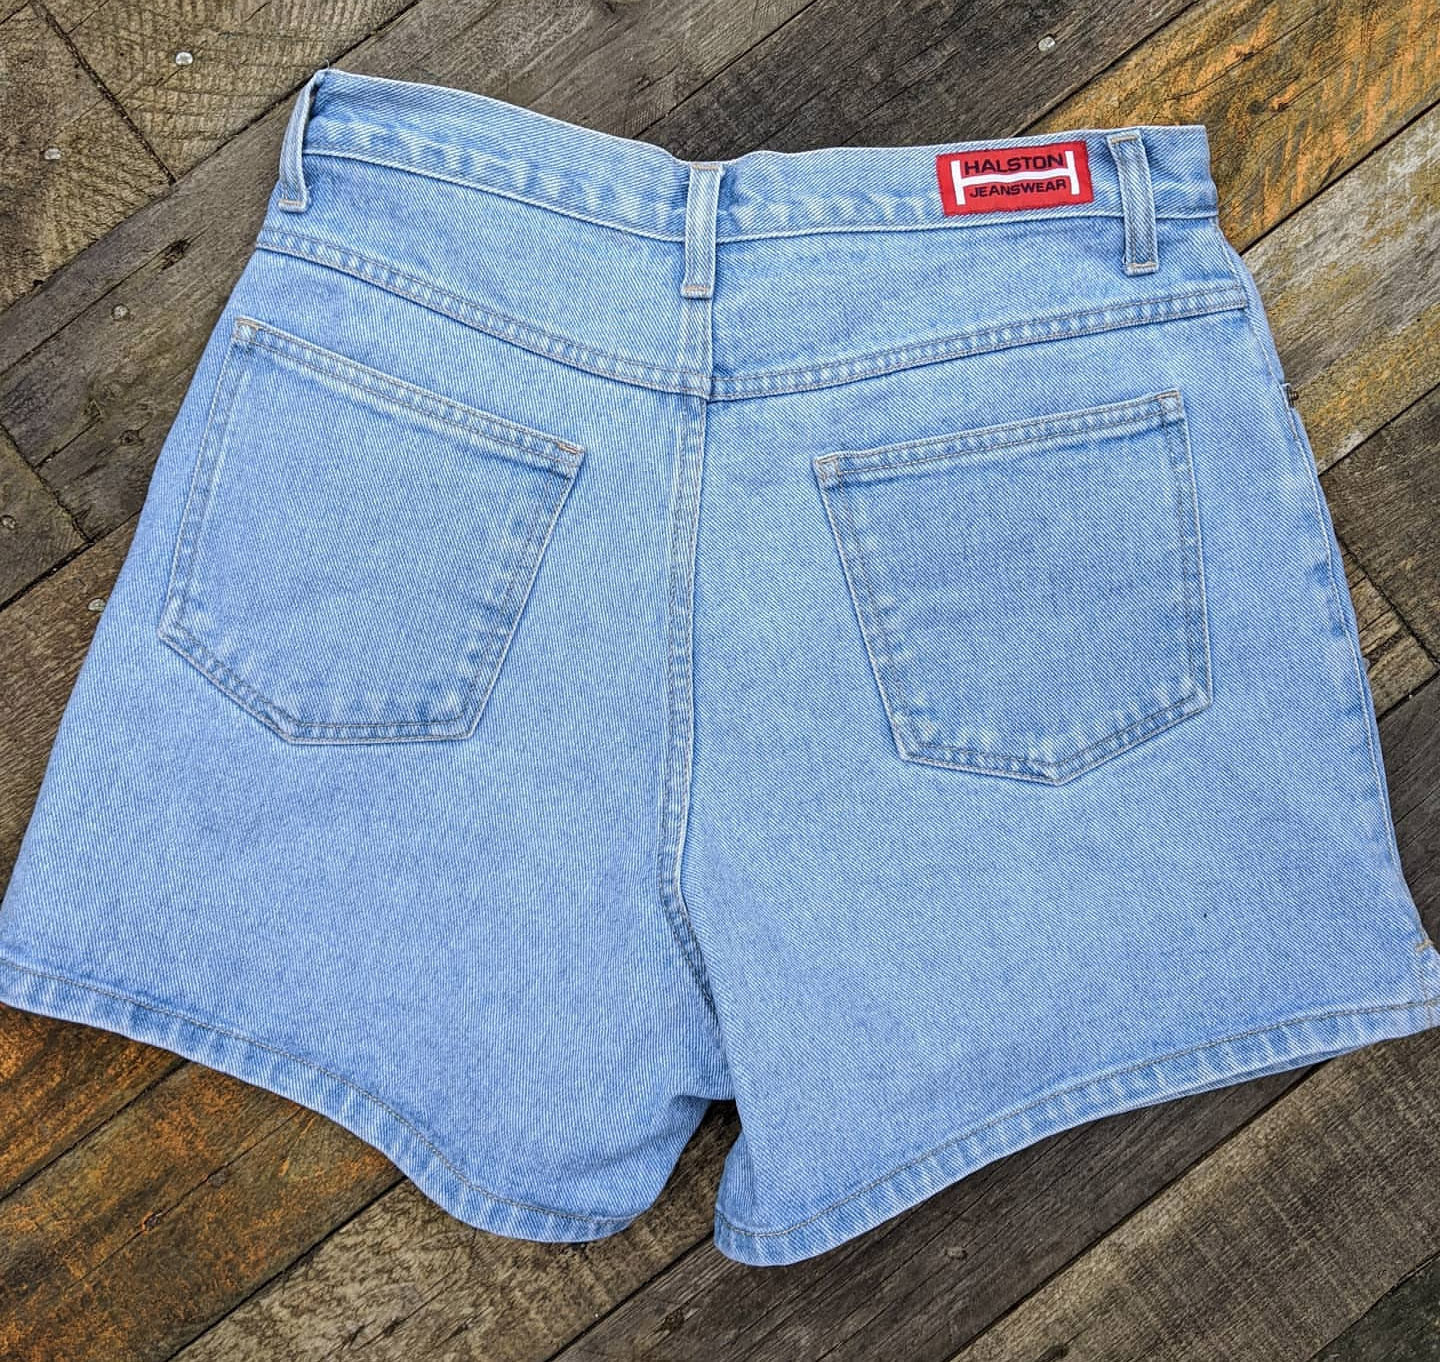 Vintage 80s high waist denim shorts Halston Jeanswear, waist 30/31"